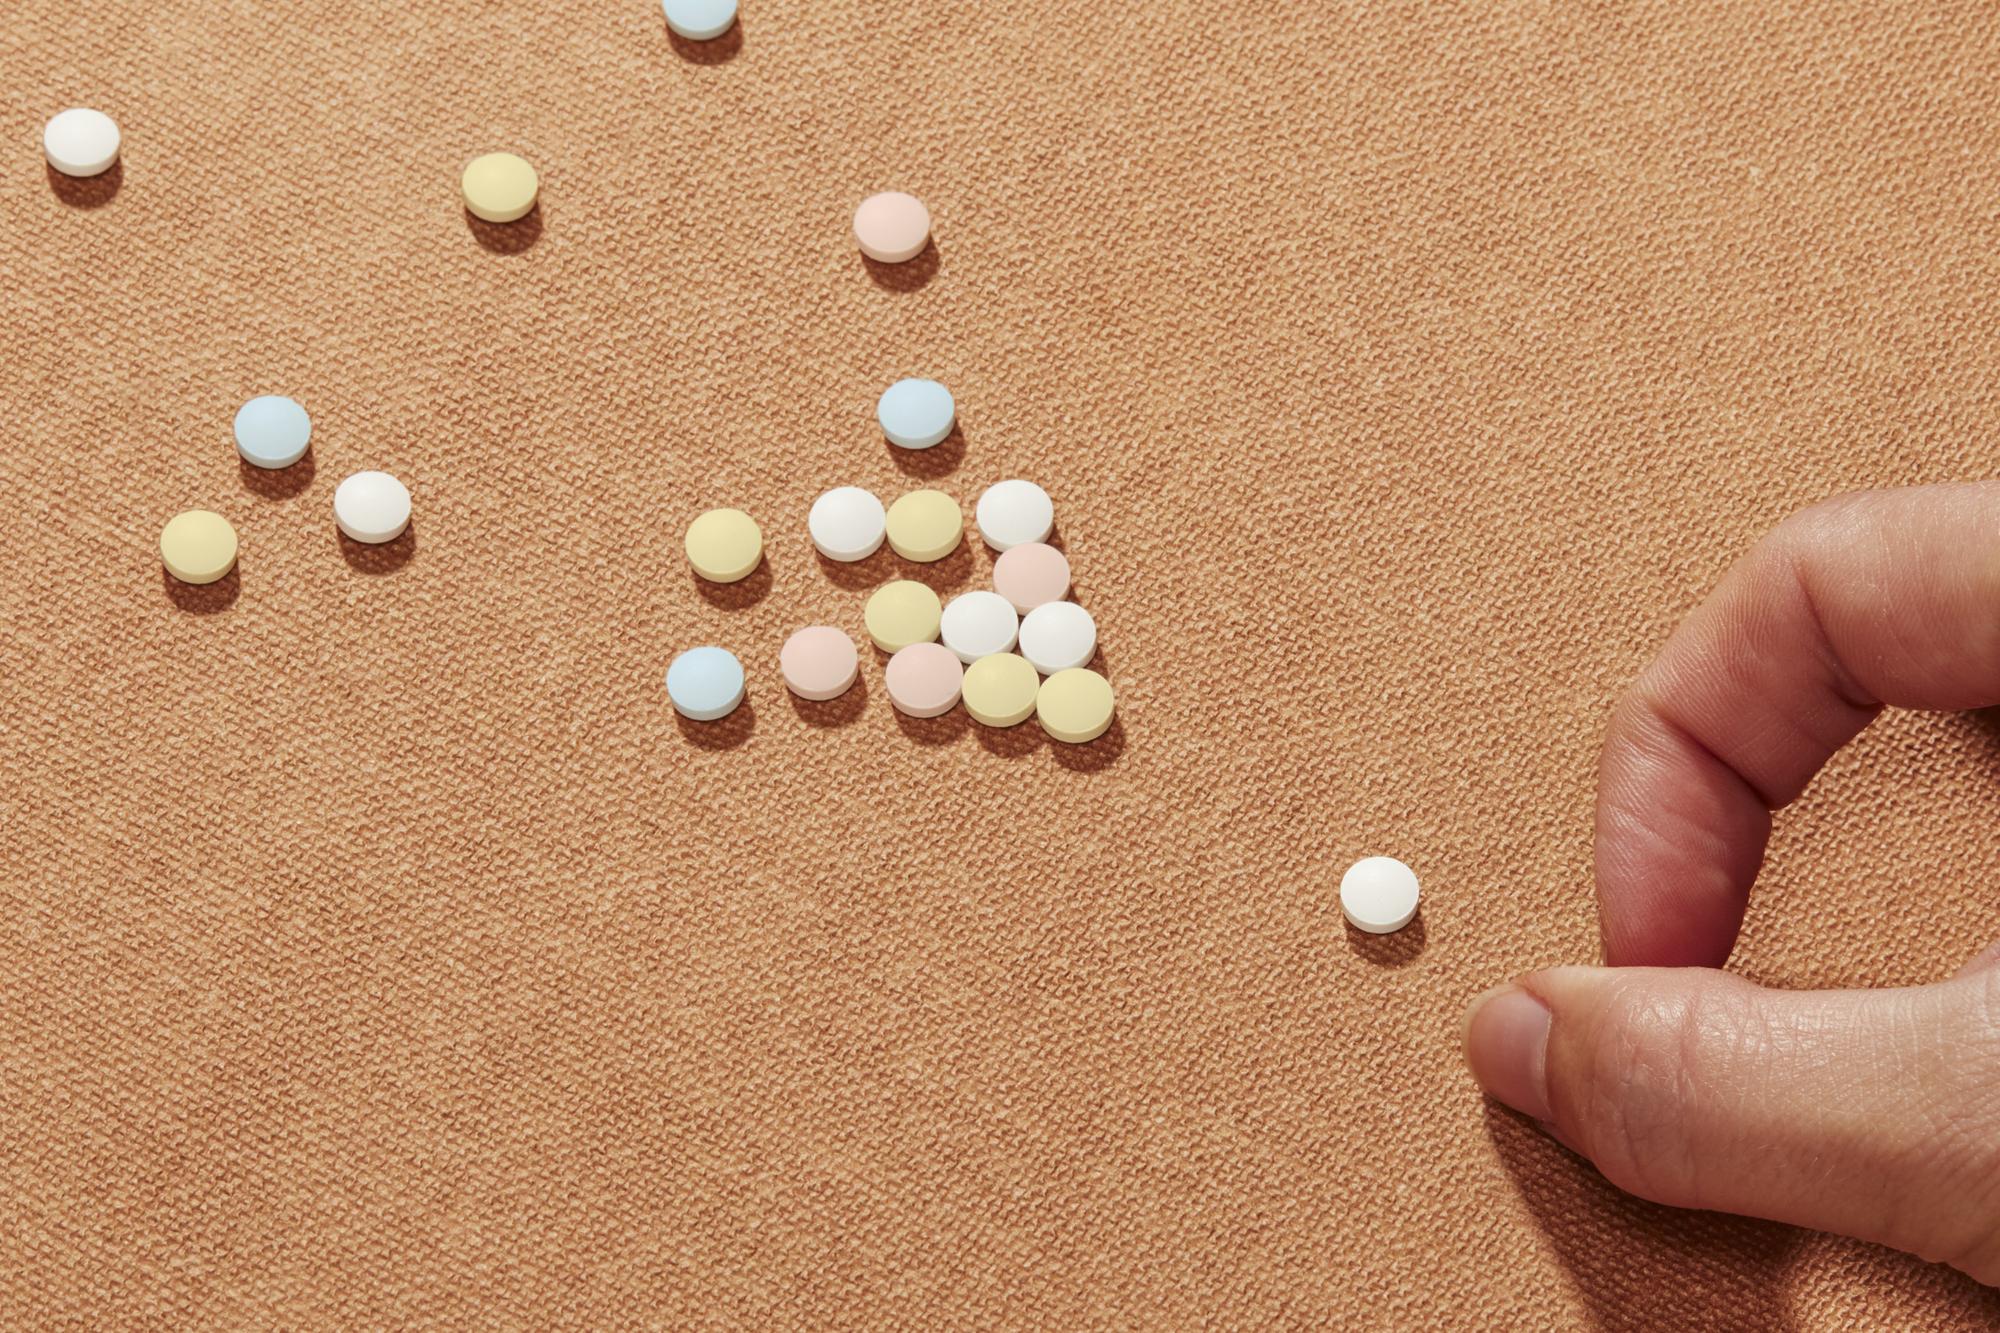 Pilule : cinq questions qui font tanguer le comprimé – Libération